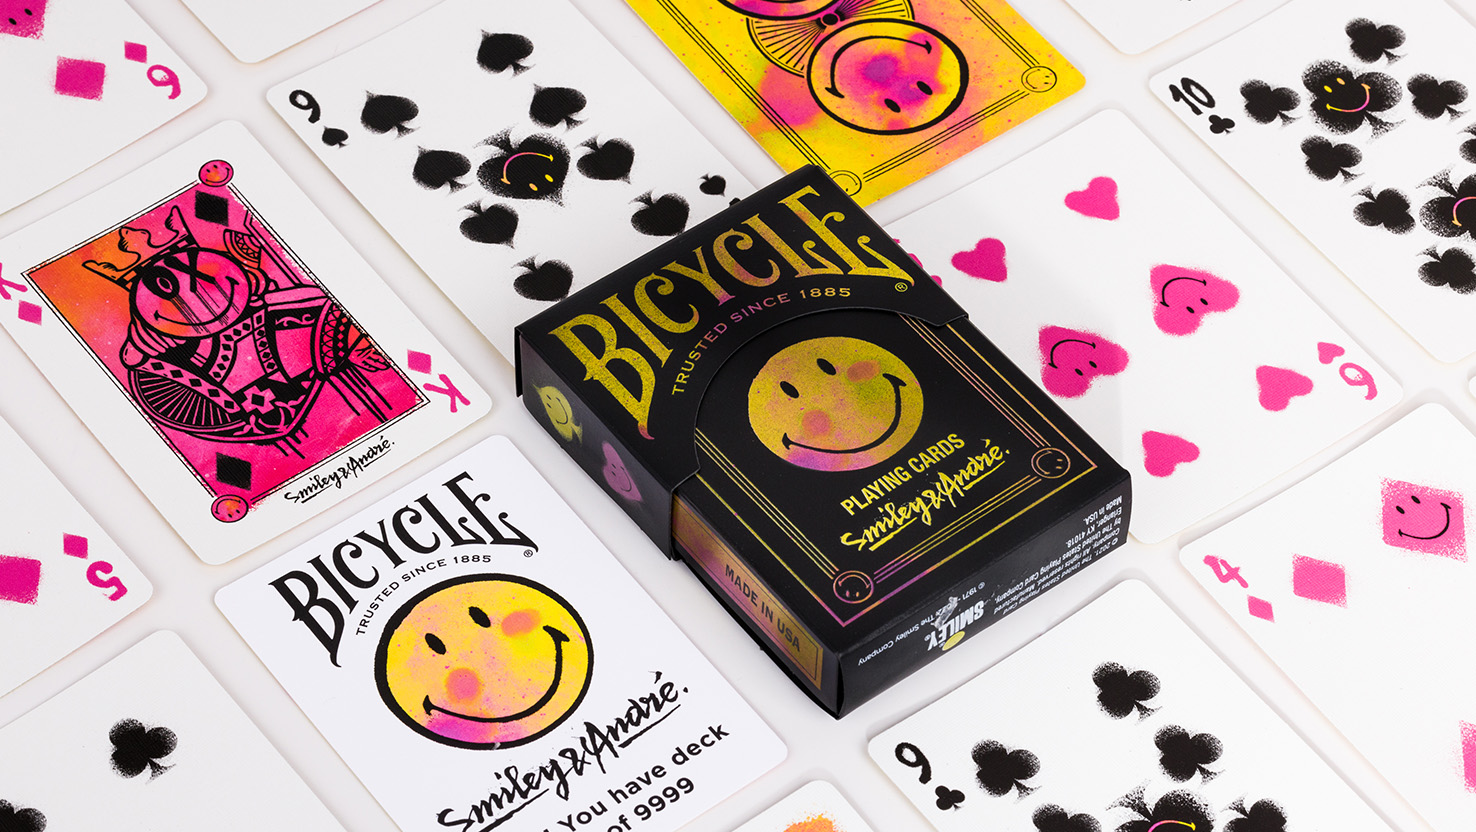 Das limitierte Smiley Deck von Bicycle zählen wir zu unseren besten Kartenspielen aller Zeiten.